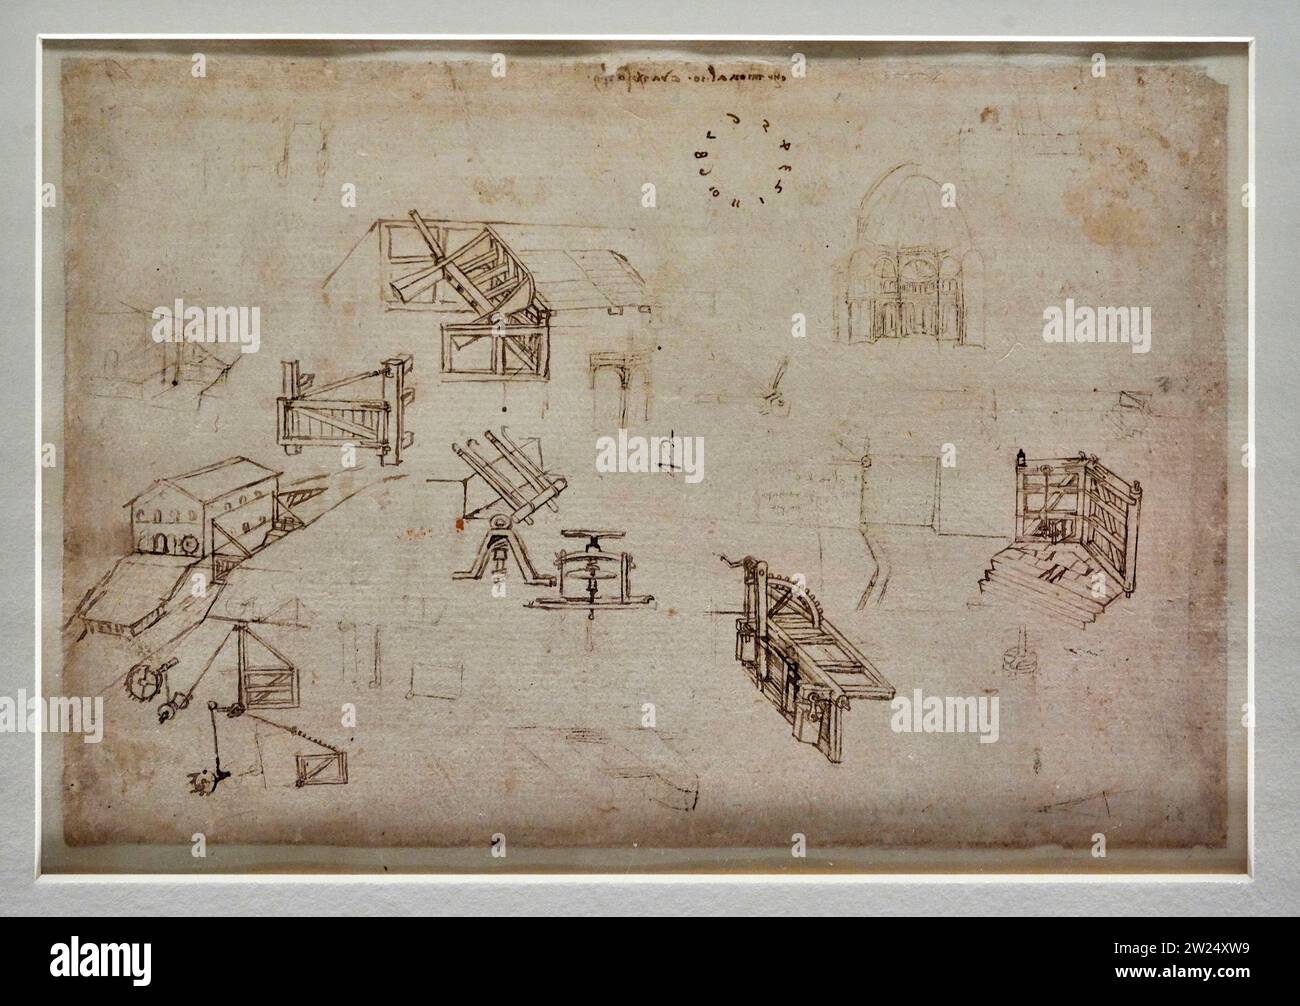 Studi di idraulica e sistemi di chiusa - codice Atlantico ,Ingegneria F. 28 r - punta metallica,penna e inchiostro - Leonardo da Vinci - 1485-1 Foto Stock